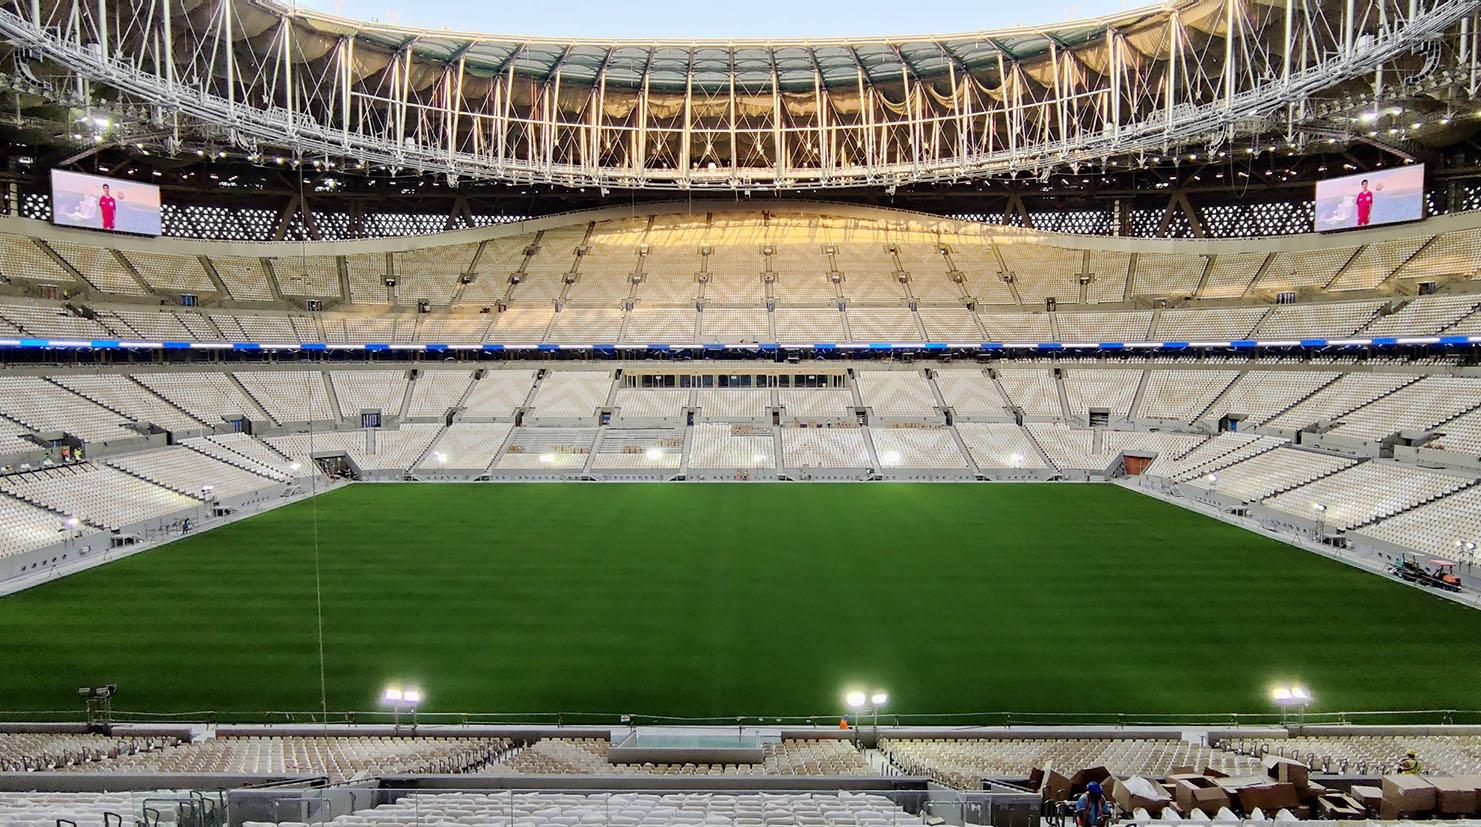 Finala Campionatului Mondial de fotbal din Qatar are loc pe 18 decembrie, pe Stadionul Iconic Lusail